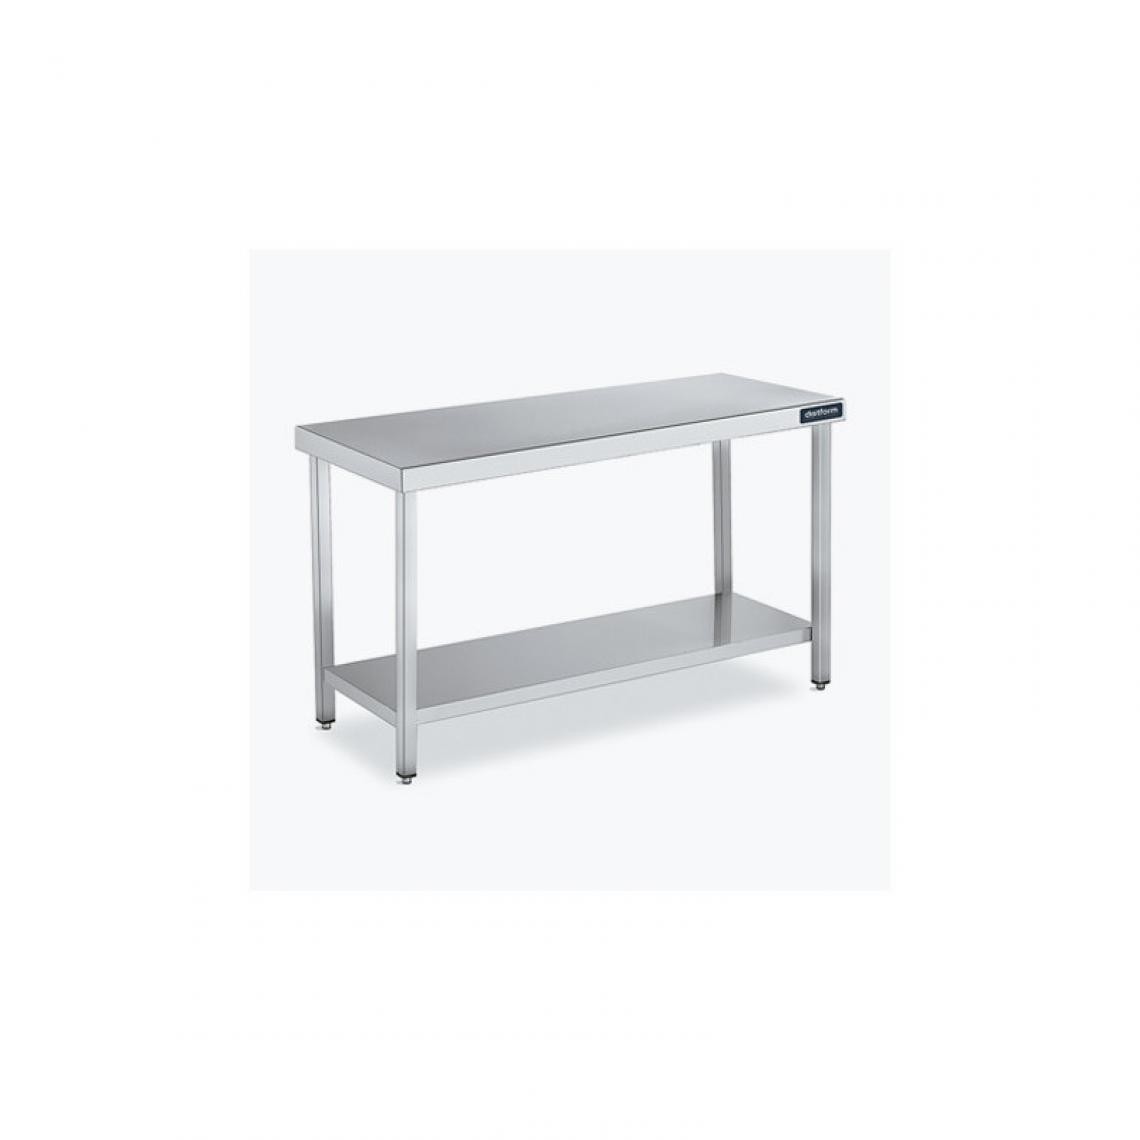 DISTFORM - Table Centrale 600x500 avec Étagère - Distform - Inox 18/101800x500x850mm - Tables à manger